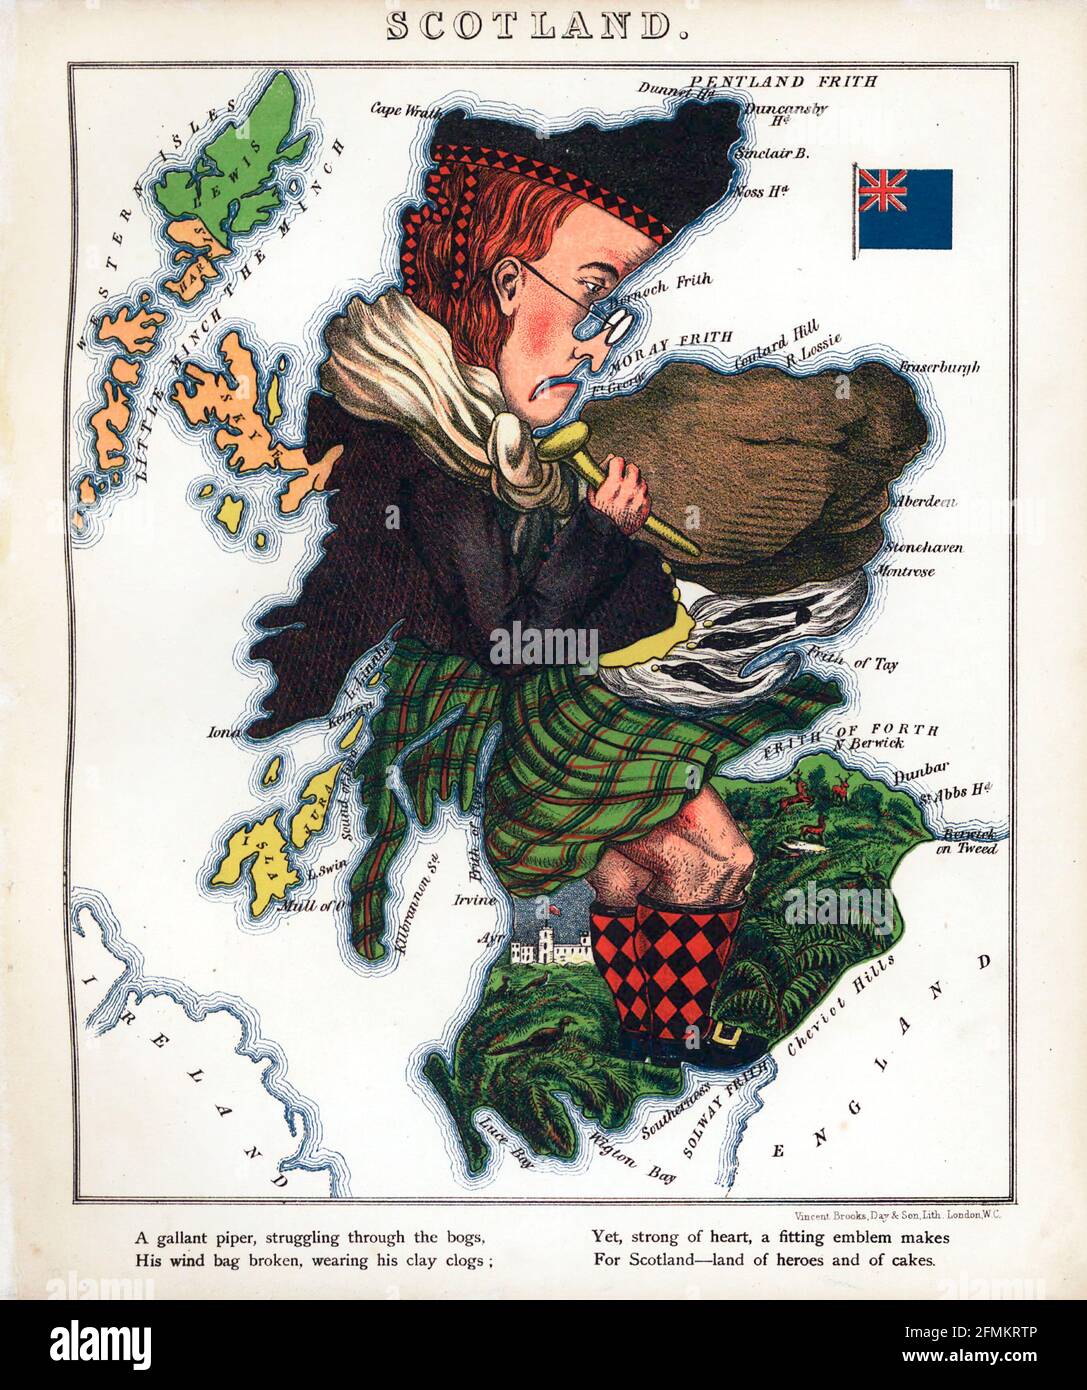 Scozia – divertimento geografico. Mappa satirica / cartografica illustrata. Pubblicato a Londra dalla ditta di Hodder e Stoughton nel 1869. Foto Stock